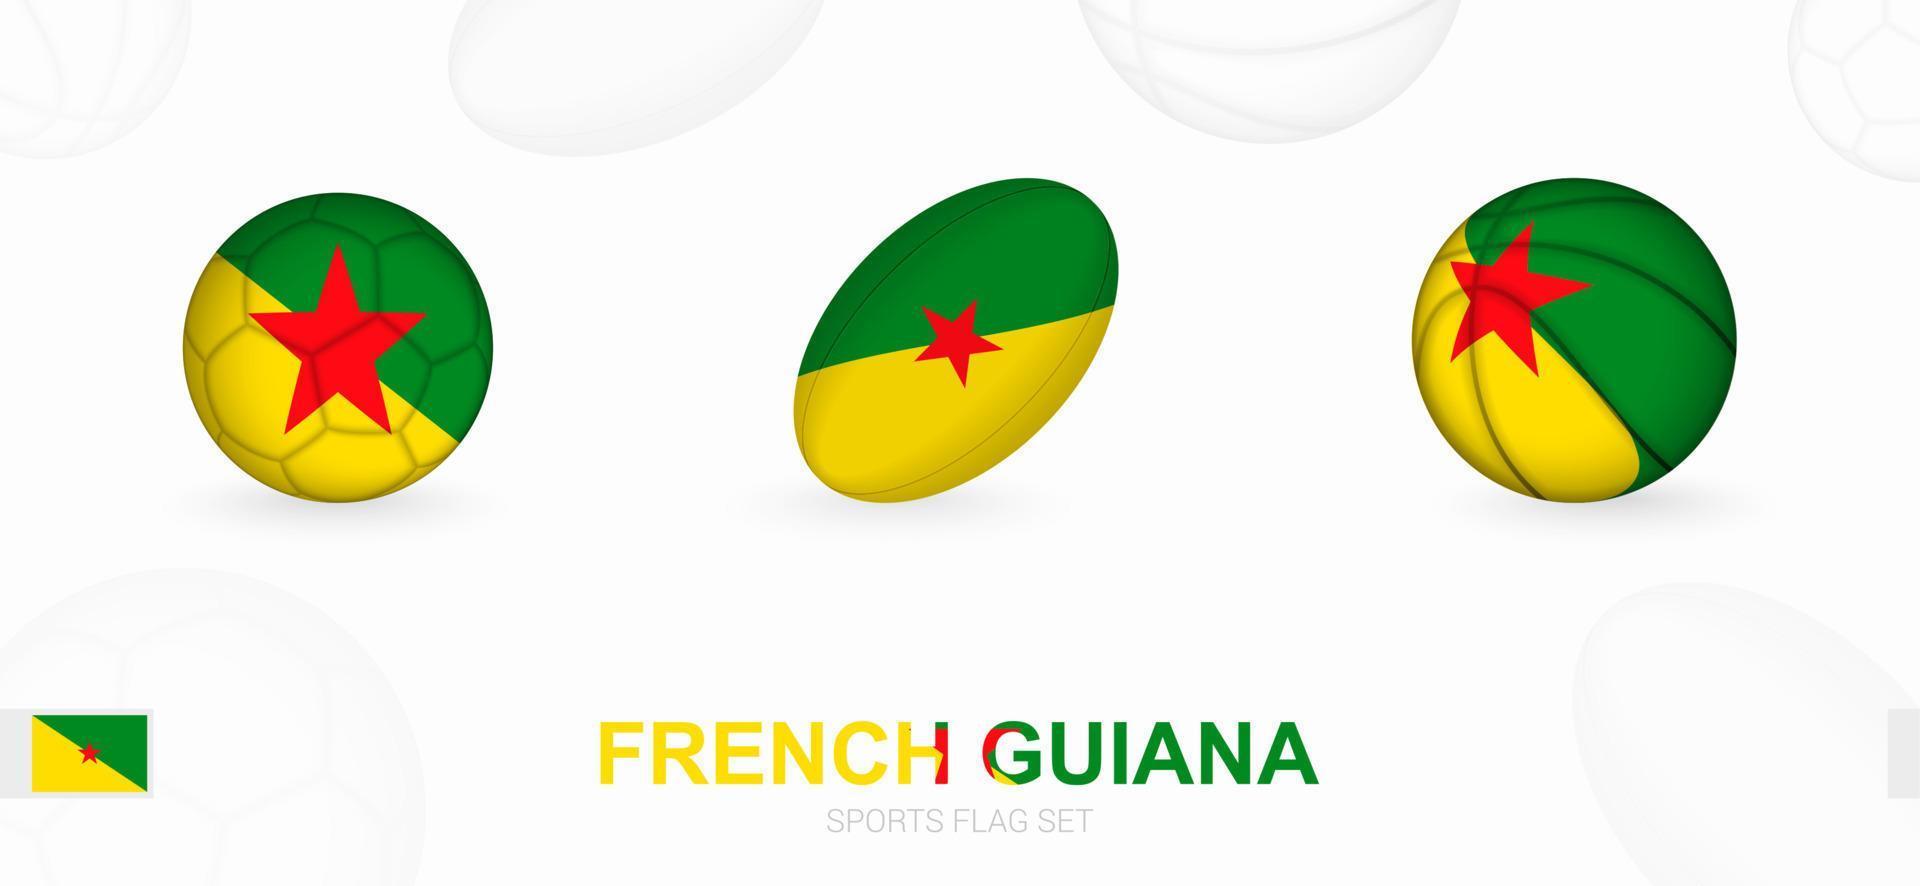 des sports Icônes pour football, le rugby et basketball avec le drapeau de français Guyane. vecteur